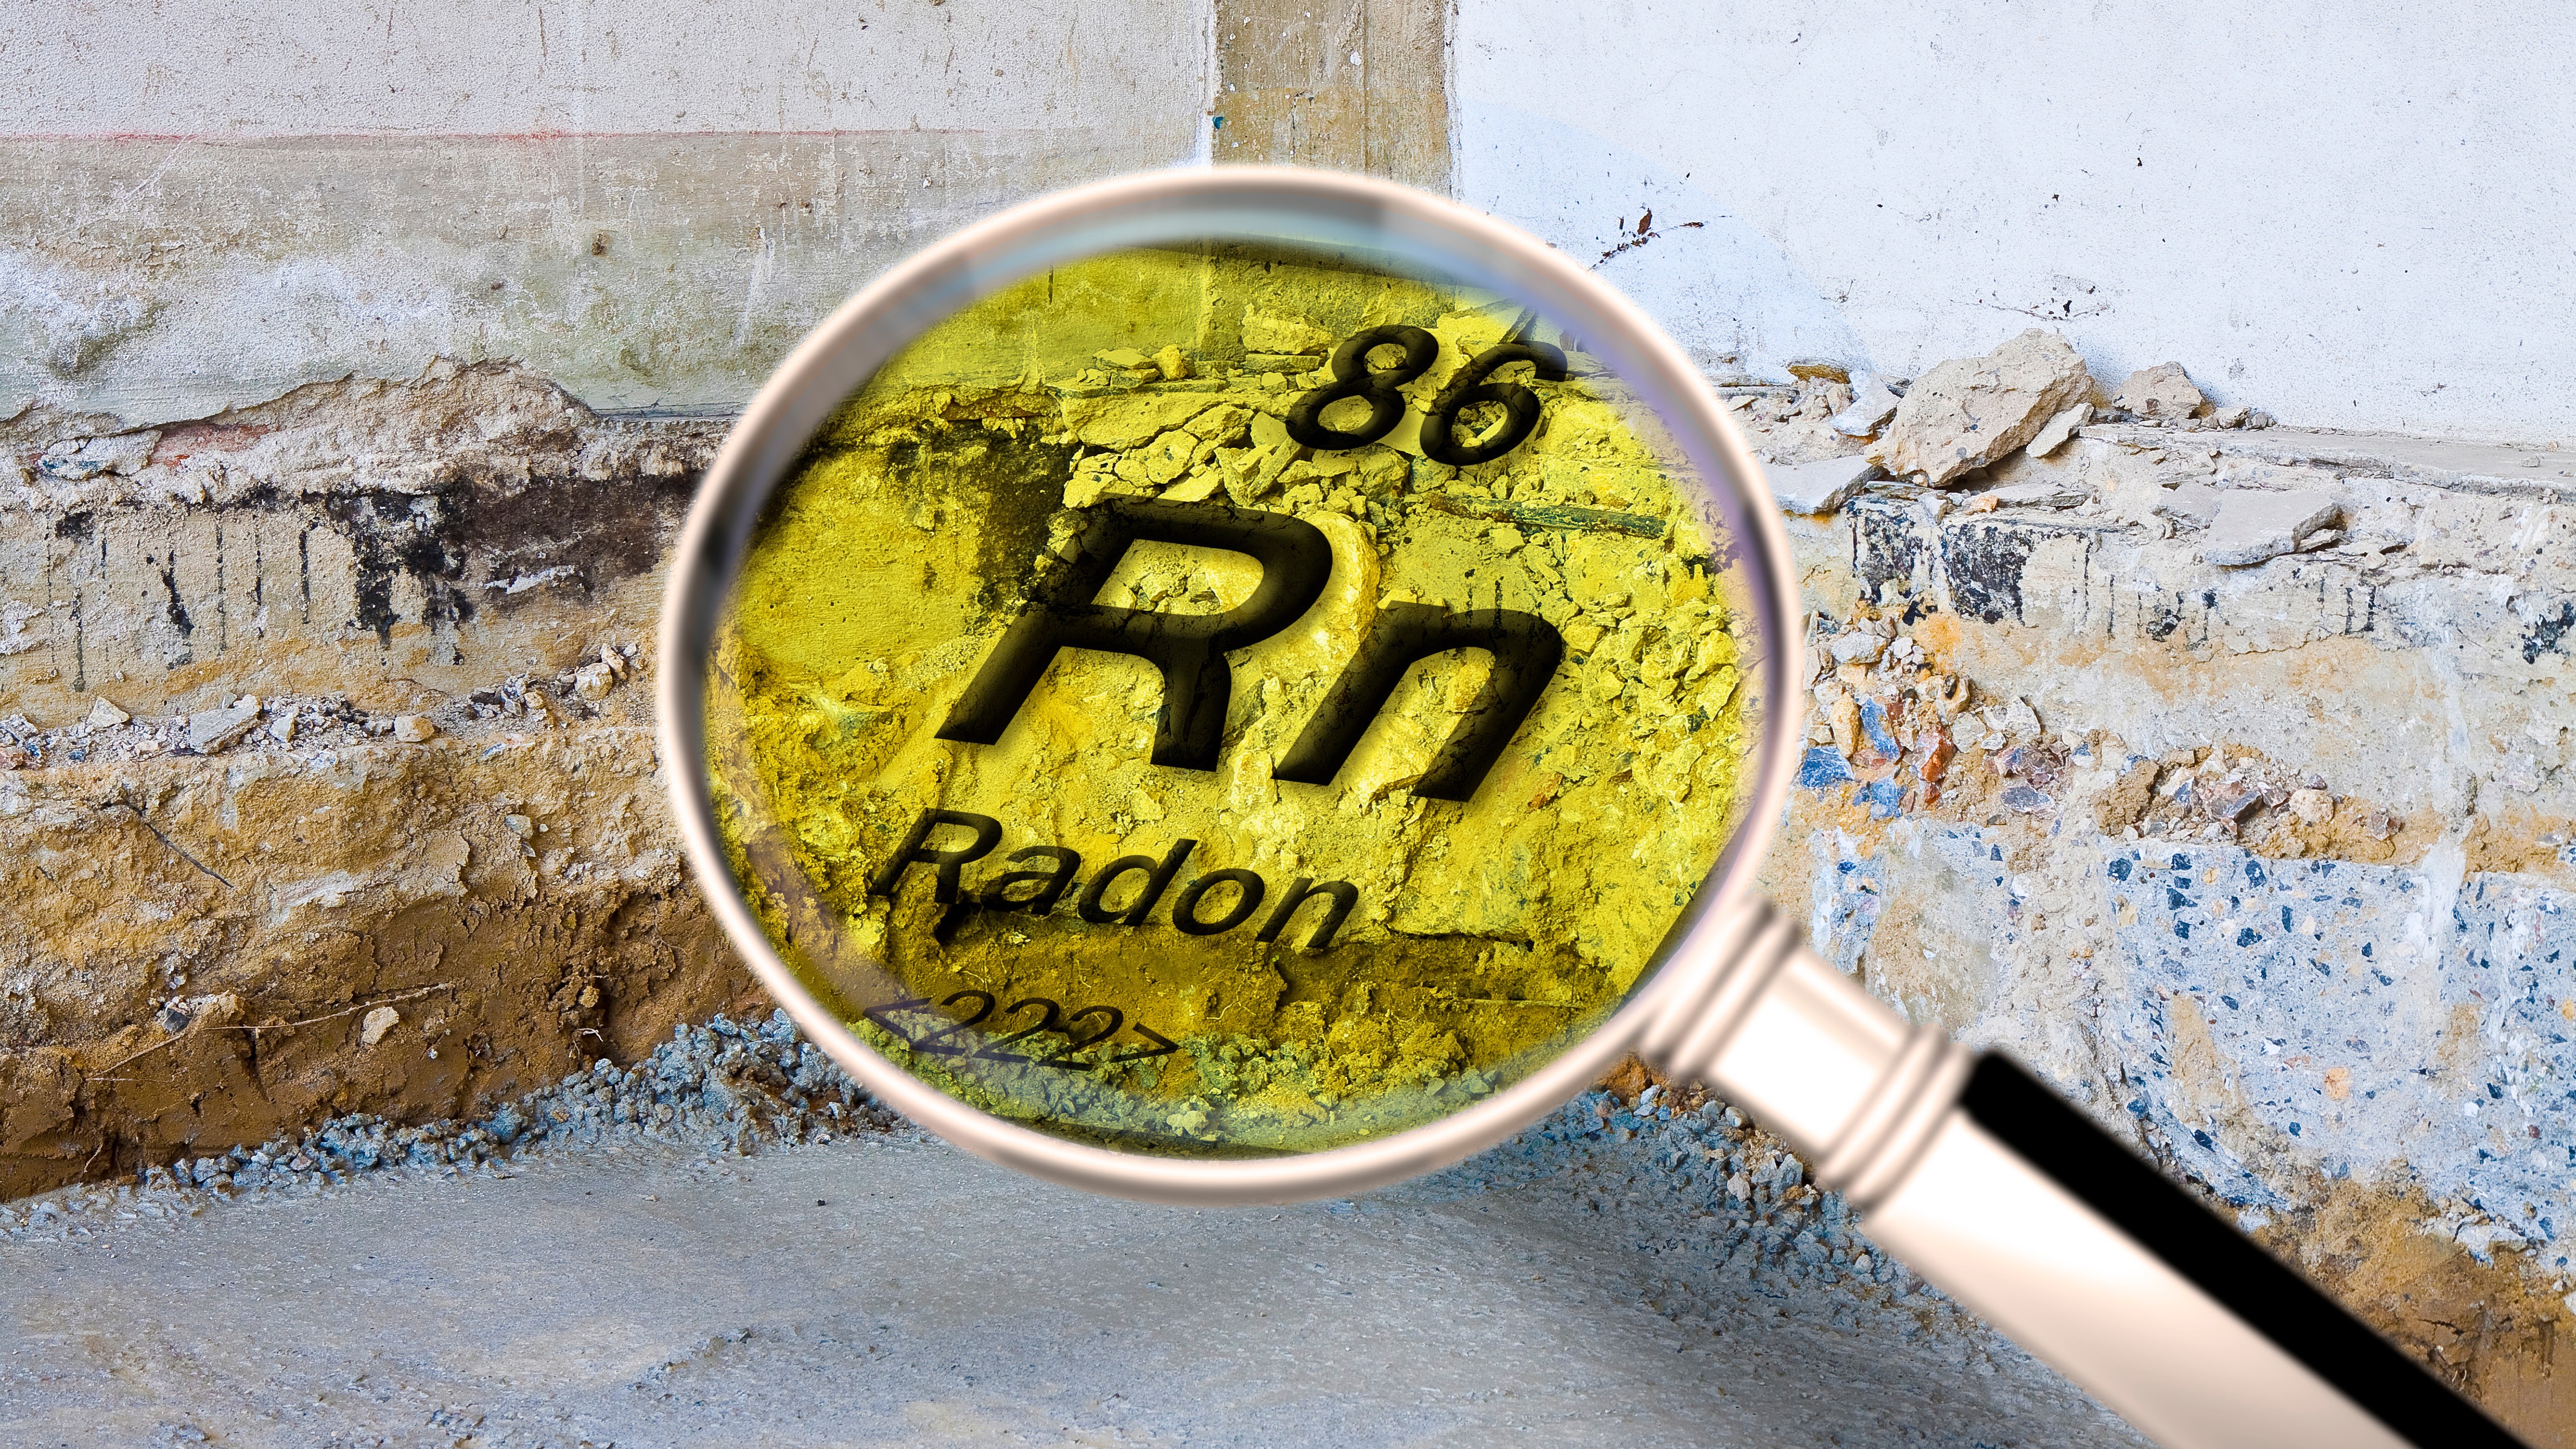 Weiterlesen ...: Radon